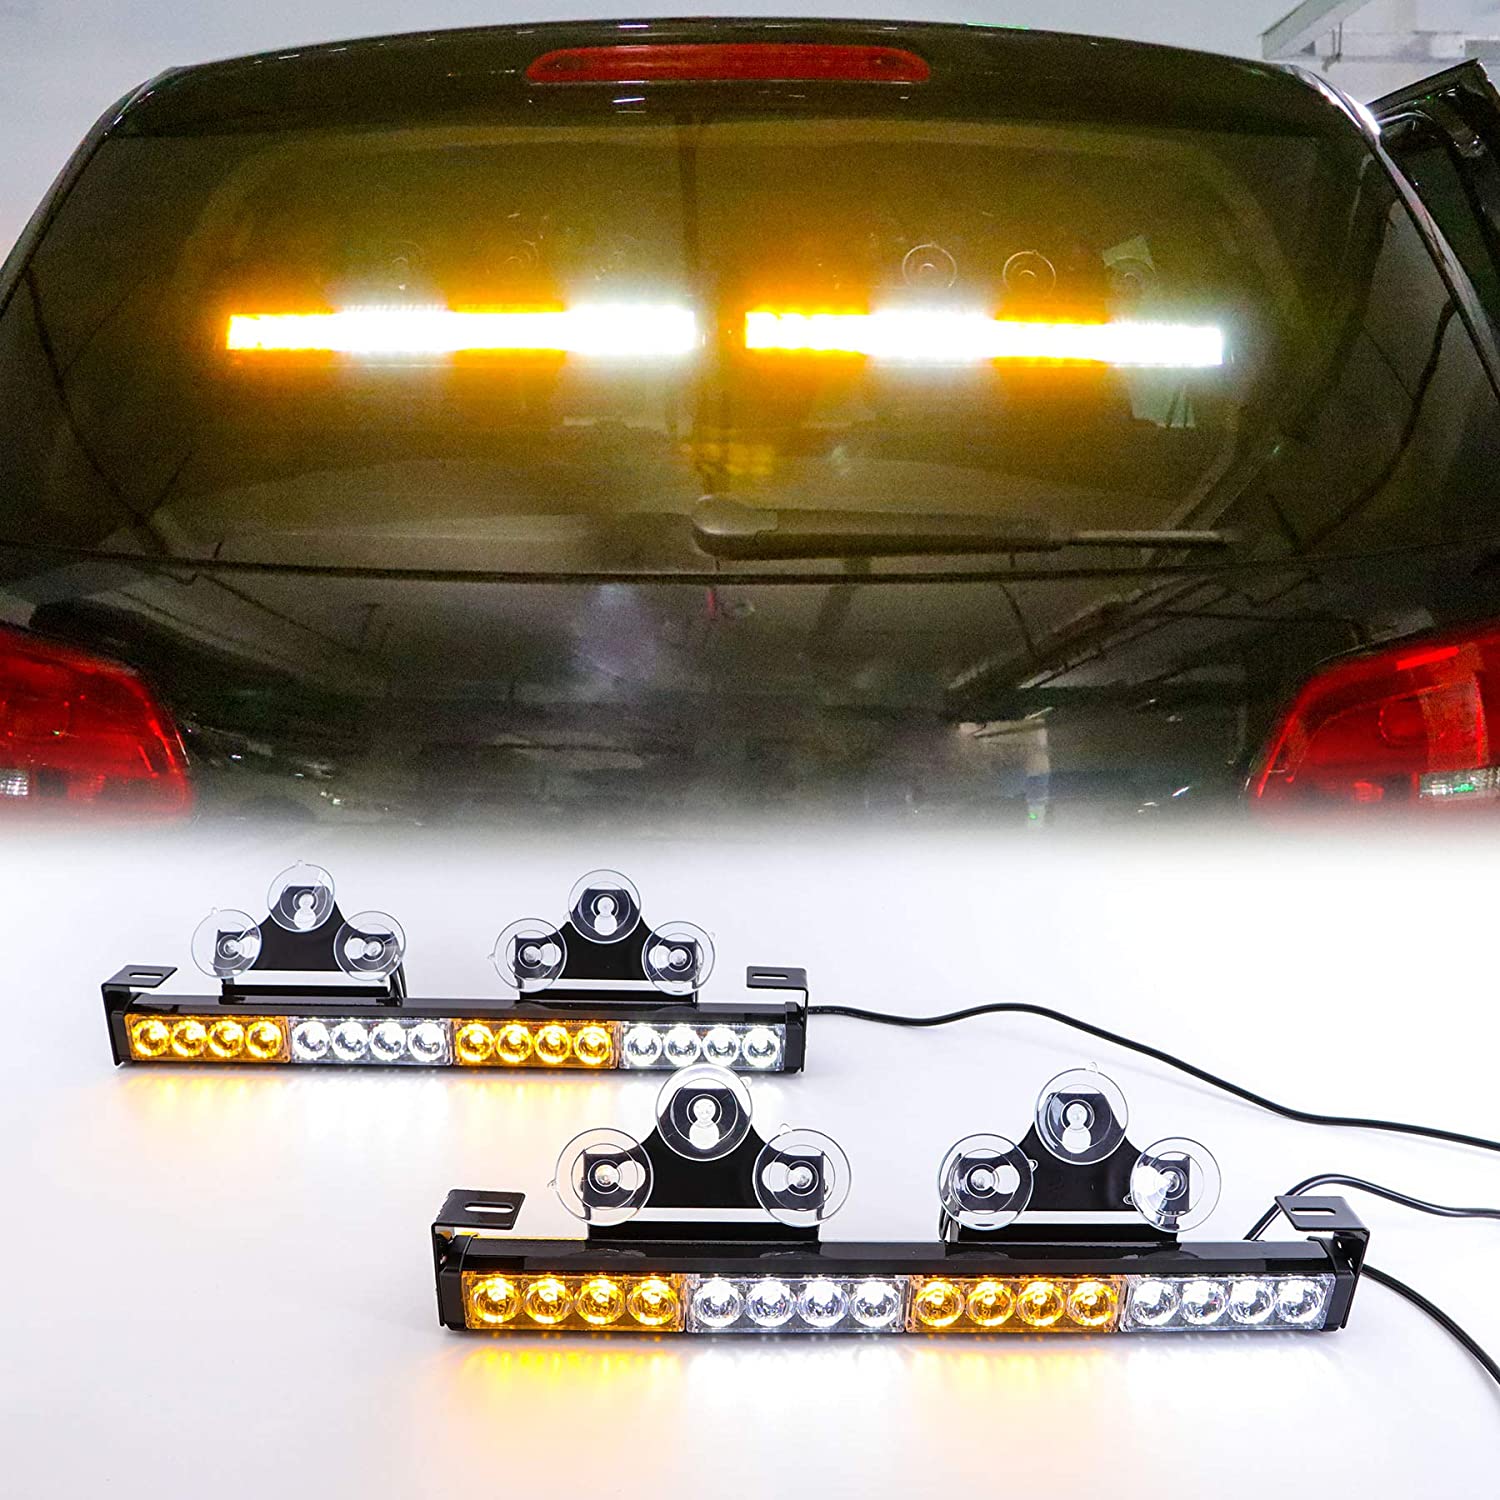 Blinkende LED-Leuchten für das Auto gelb weiß mehrfarbig